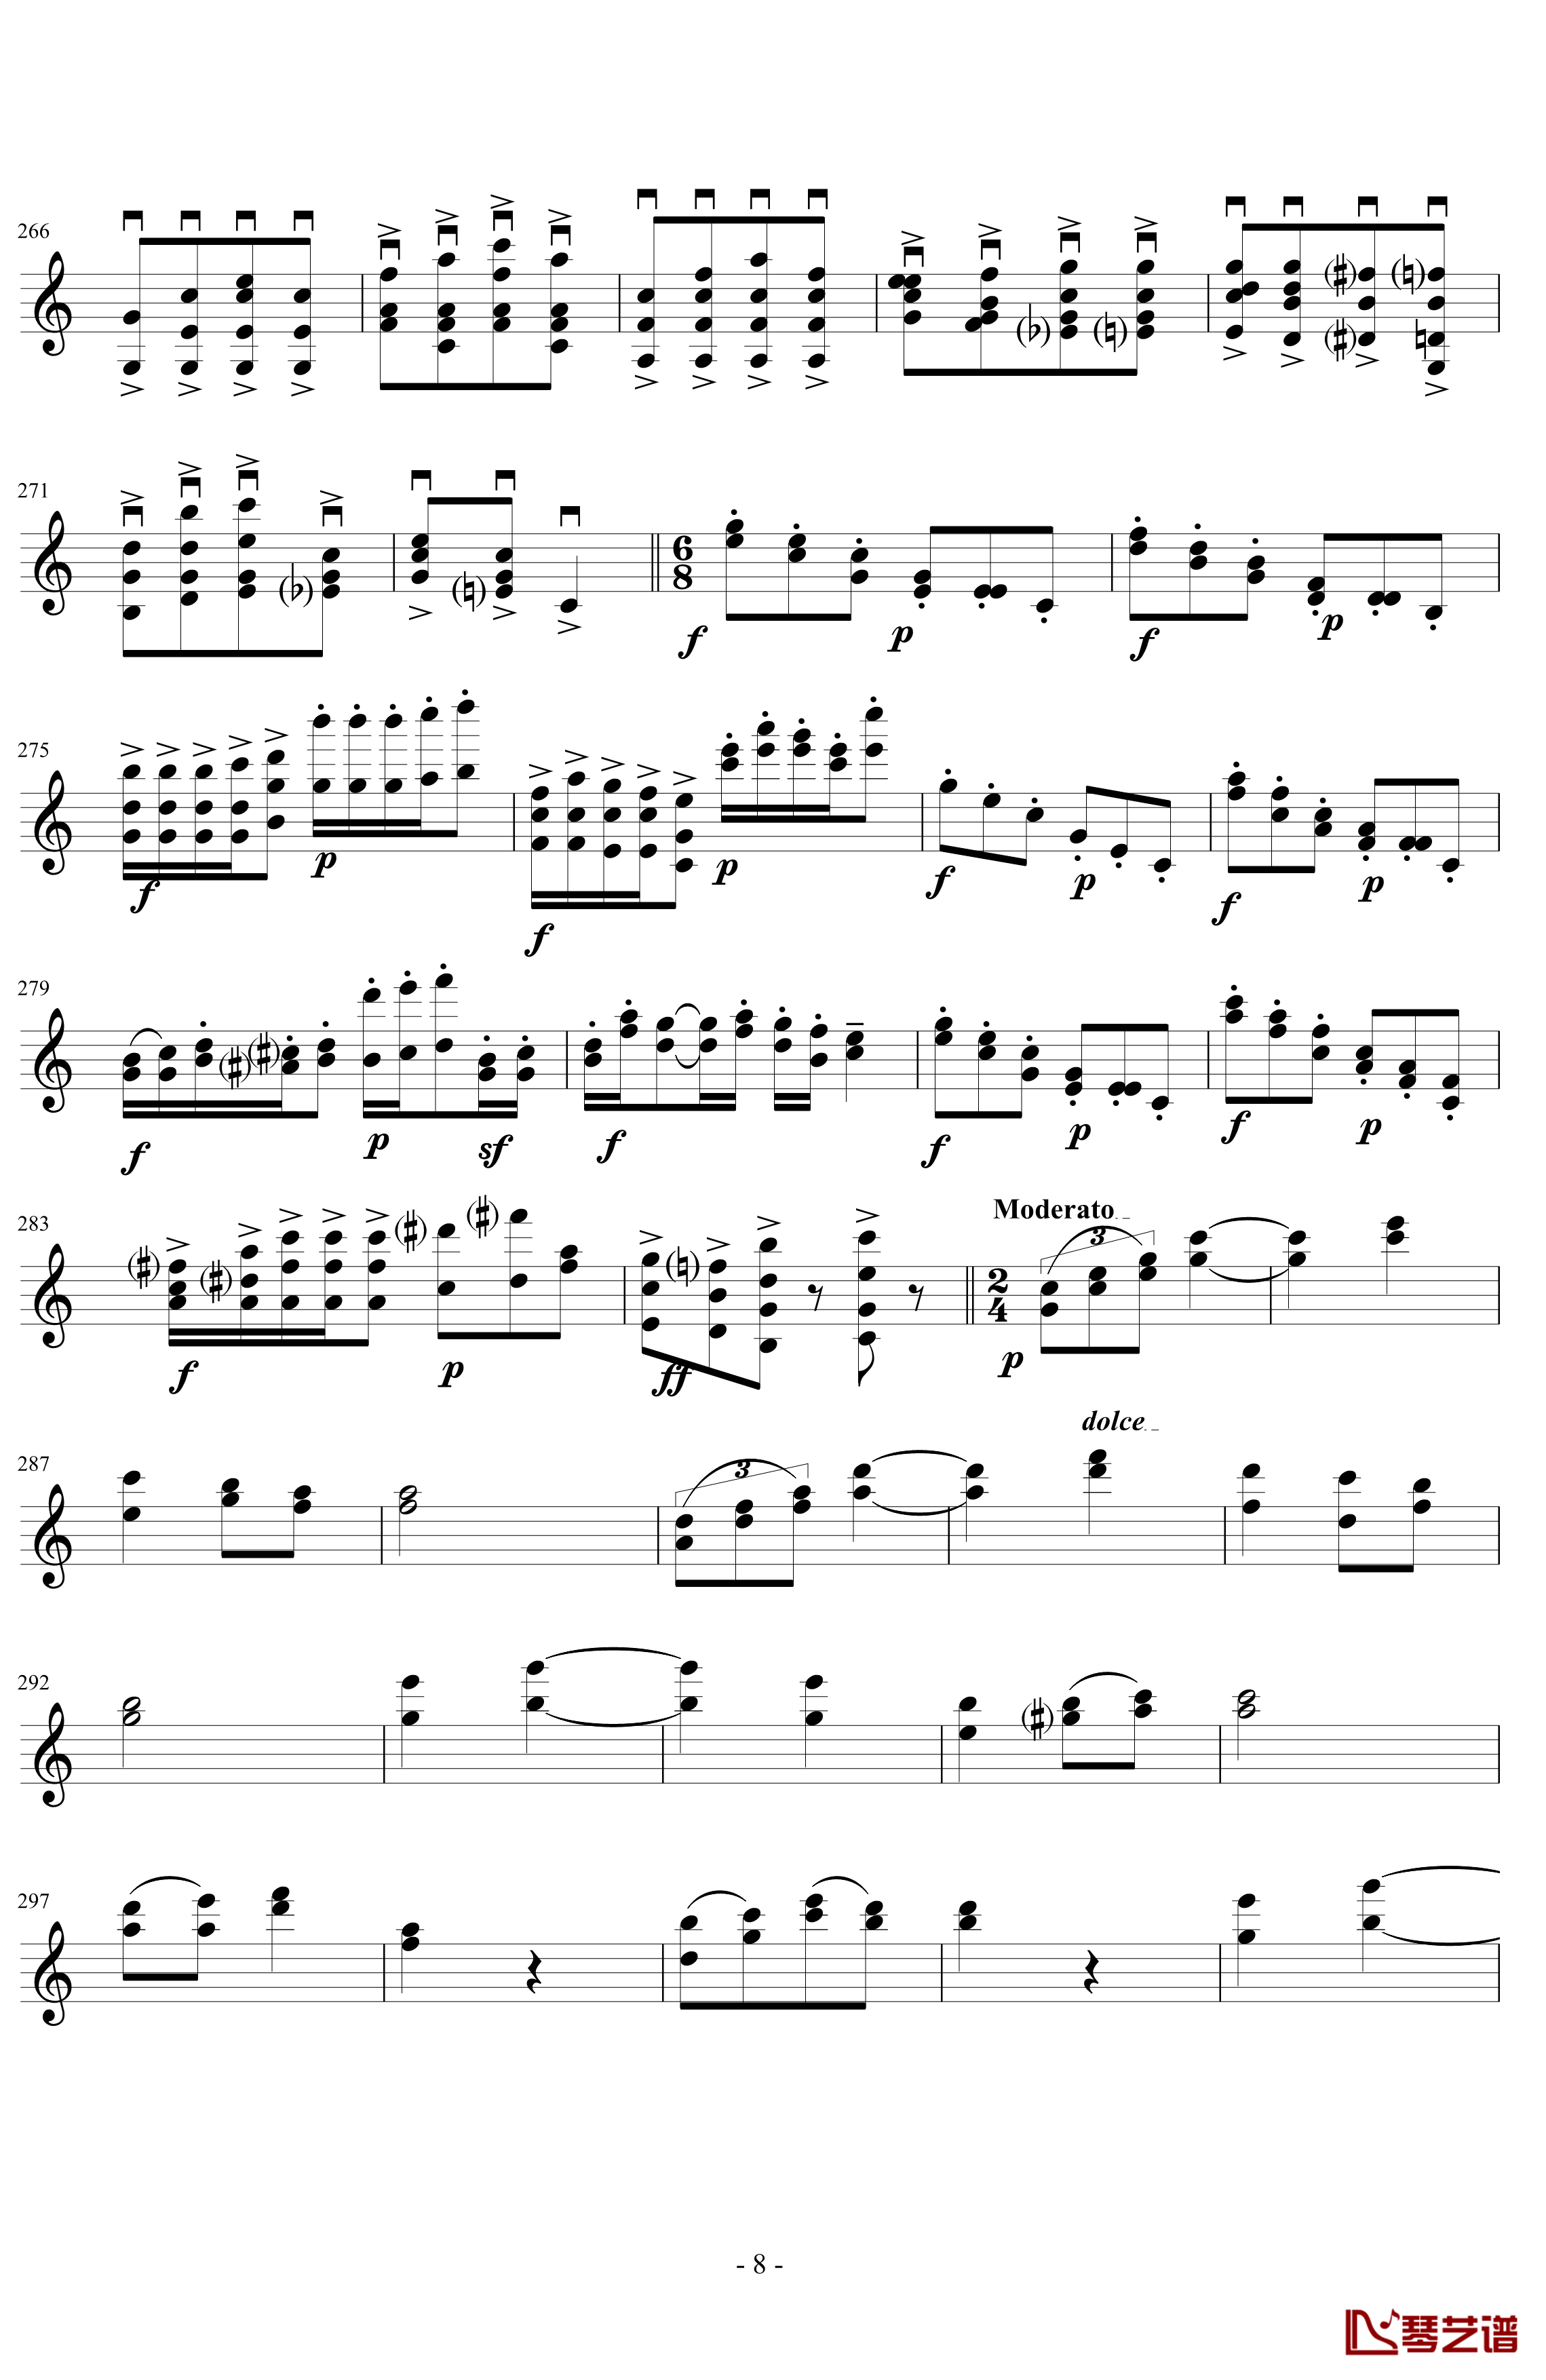 莫扎特主题炫技变奏曲钢琴谱-小提琴版-莫扎特8